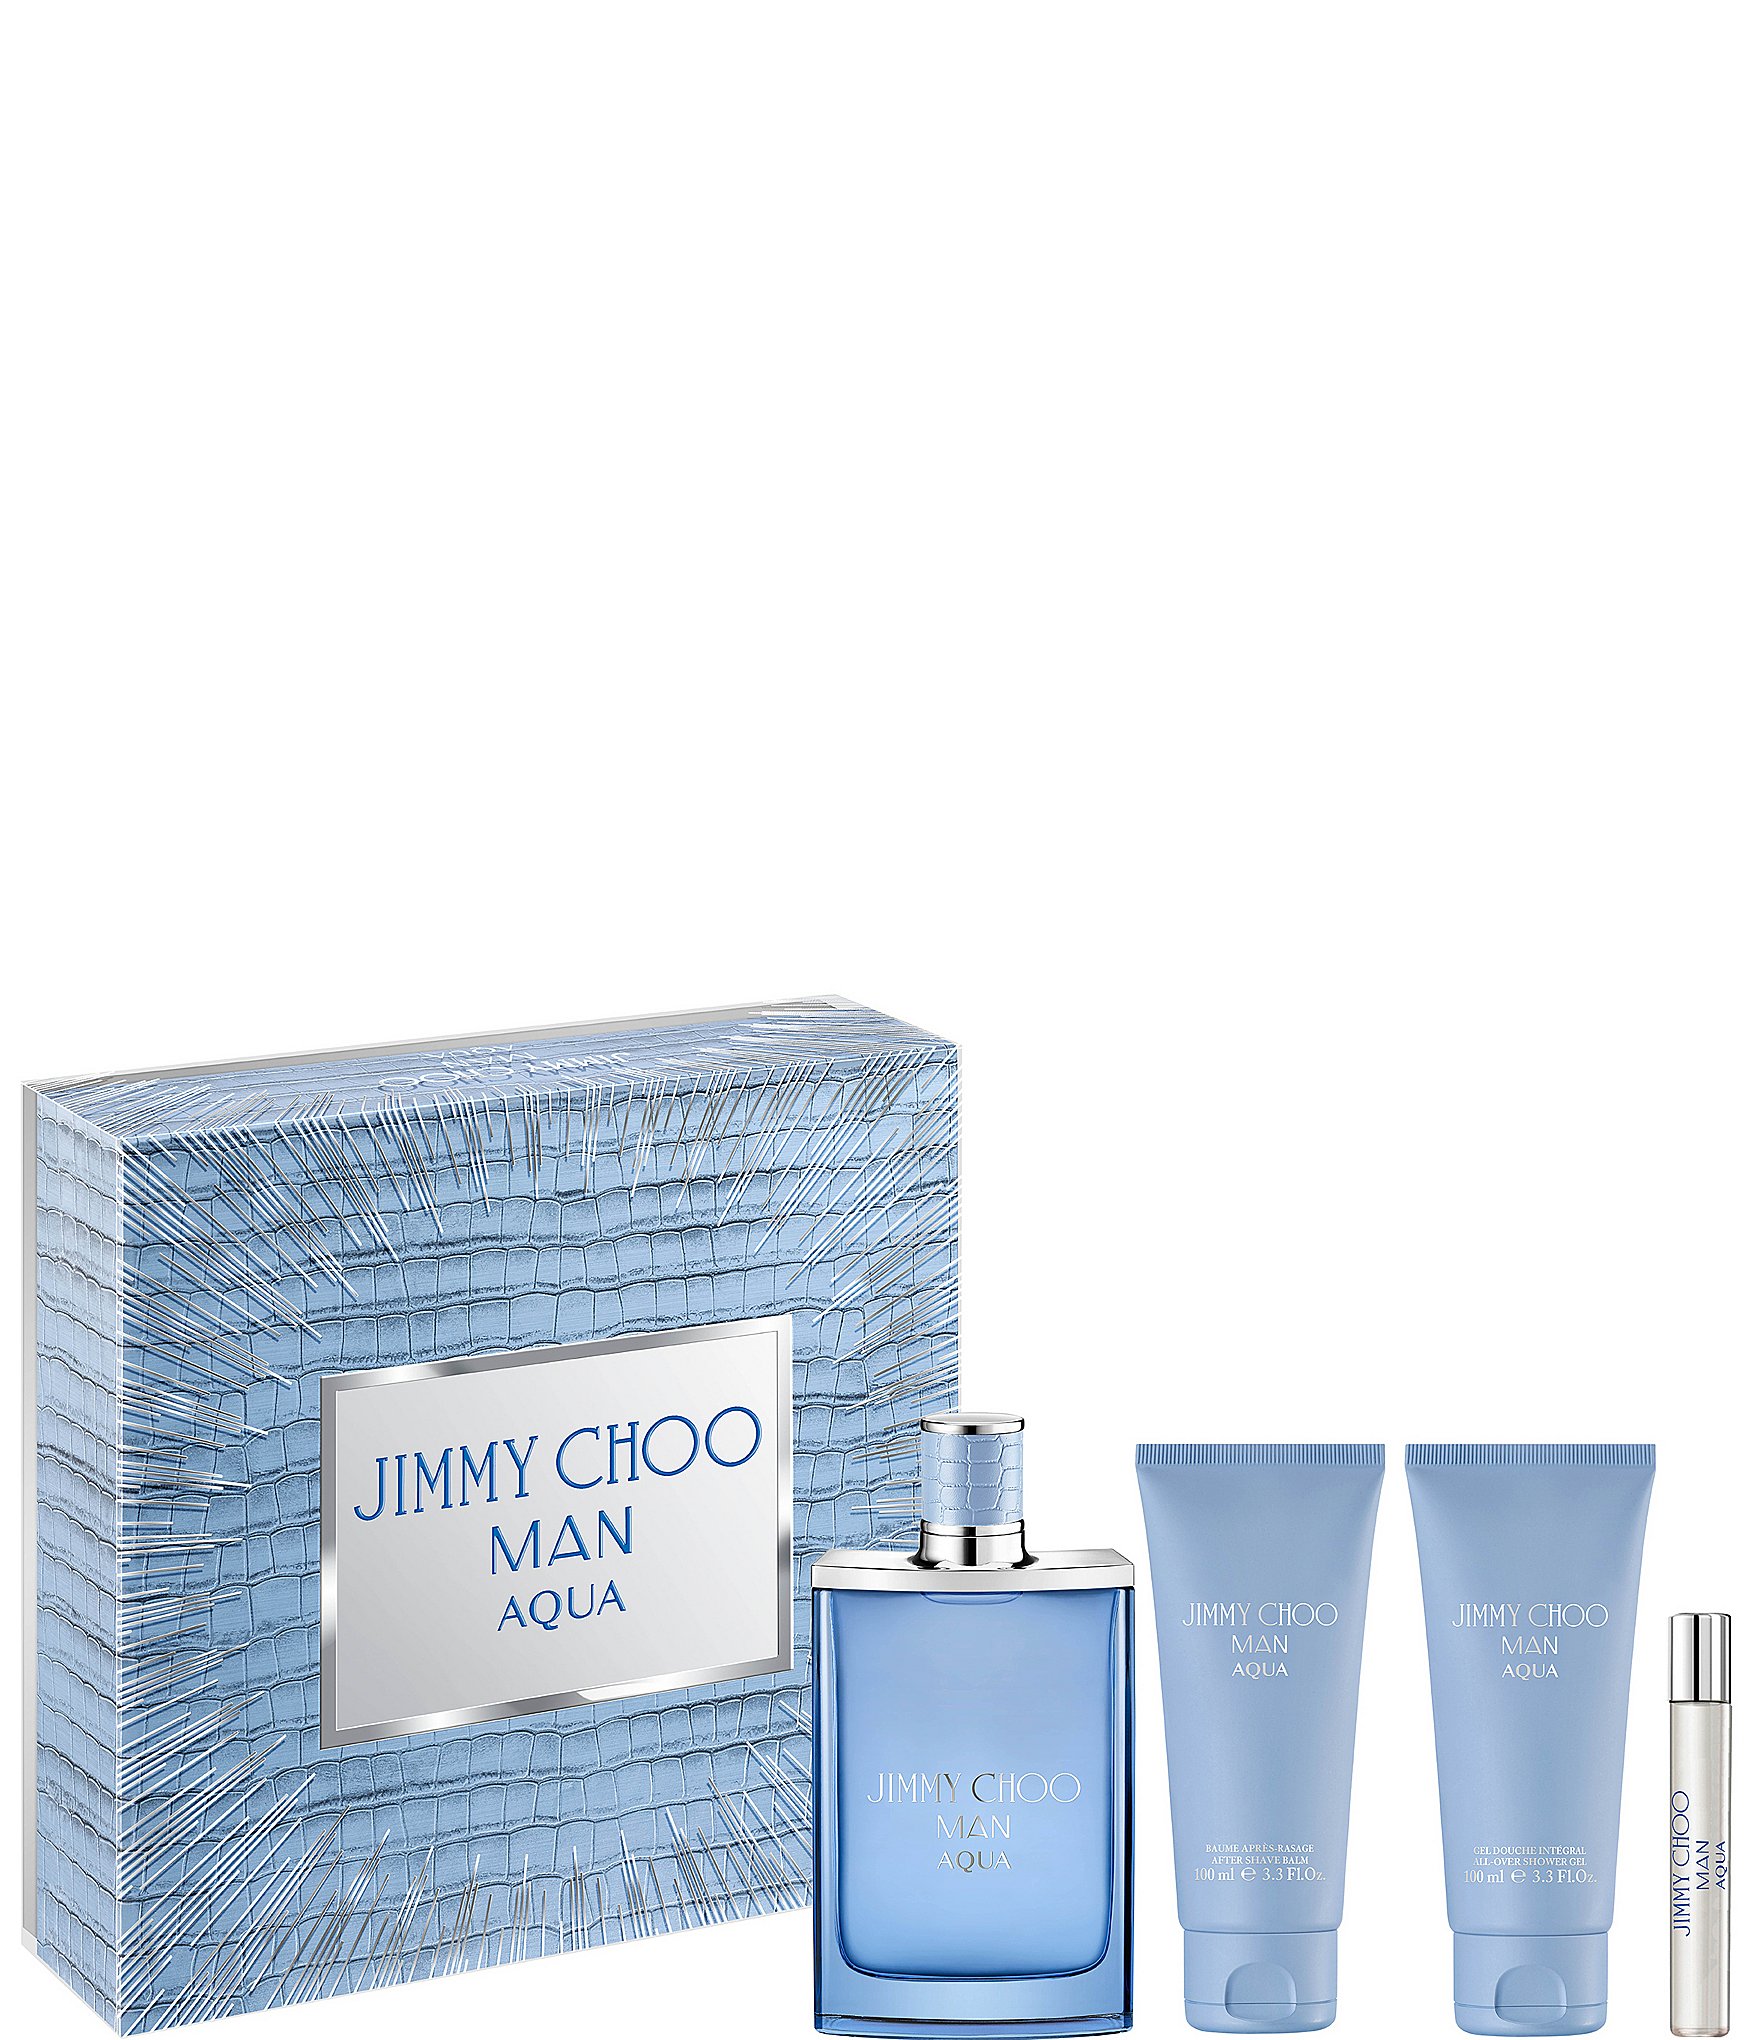  JIMMY CHOO Man Blue Eau De Toilette Spray, 3.3 Fl Oz : JIMMY  CHOO: Beauty & Personal Care